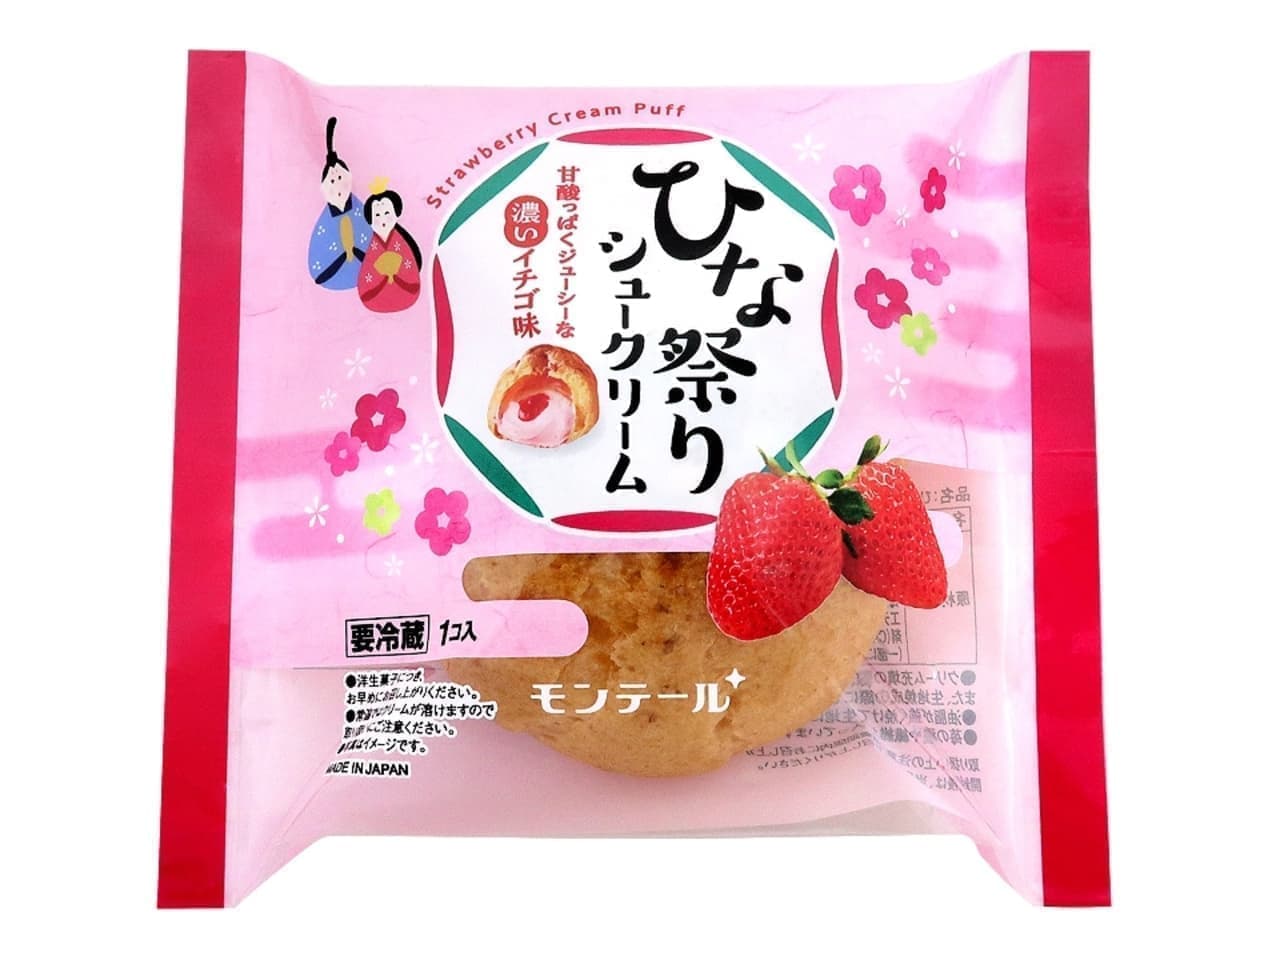 MONTAIR "Hinamatsuri Cream Puff" package